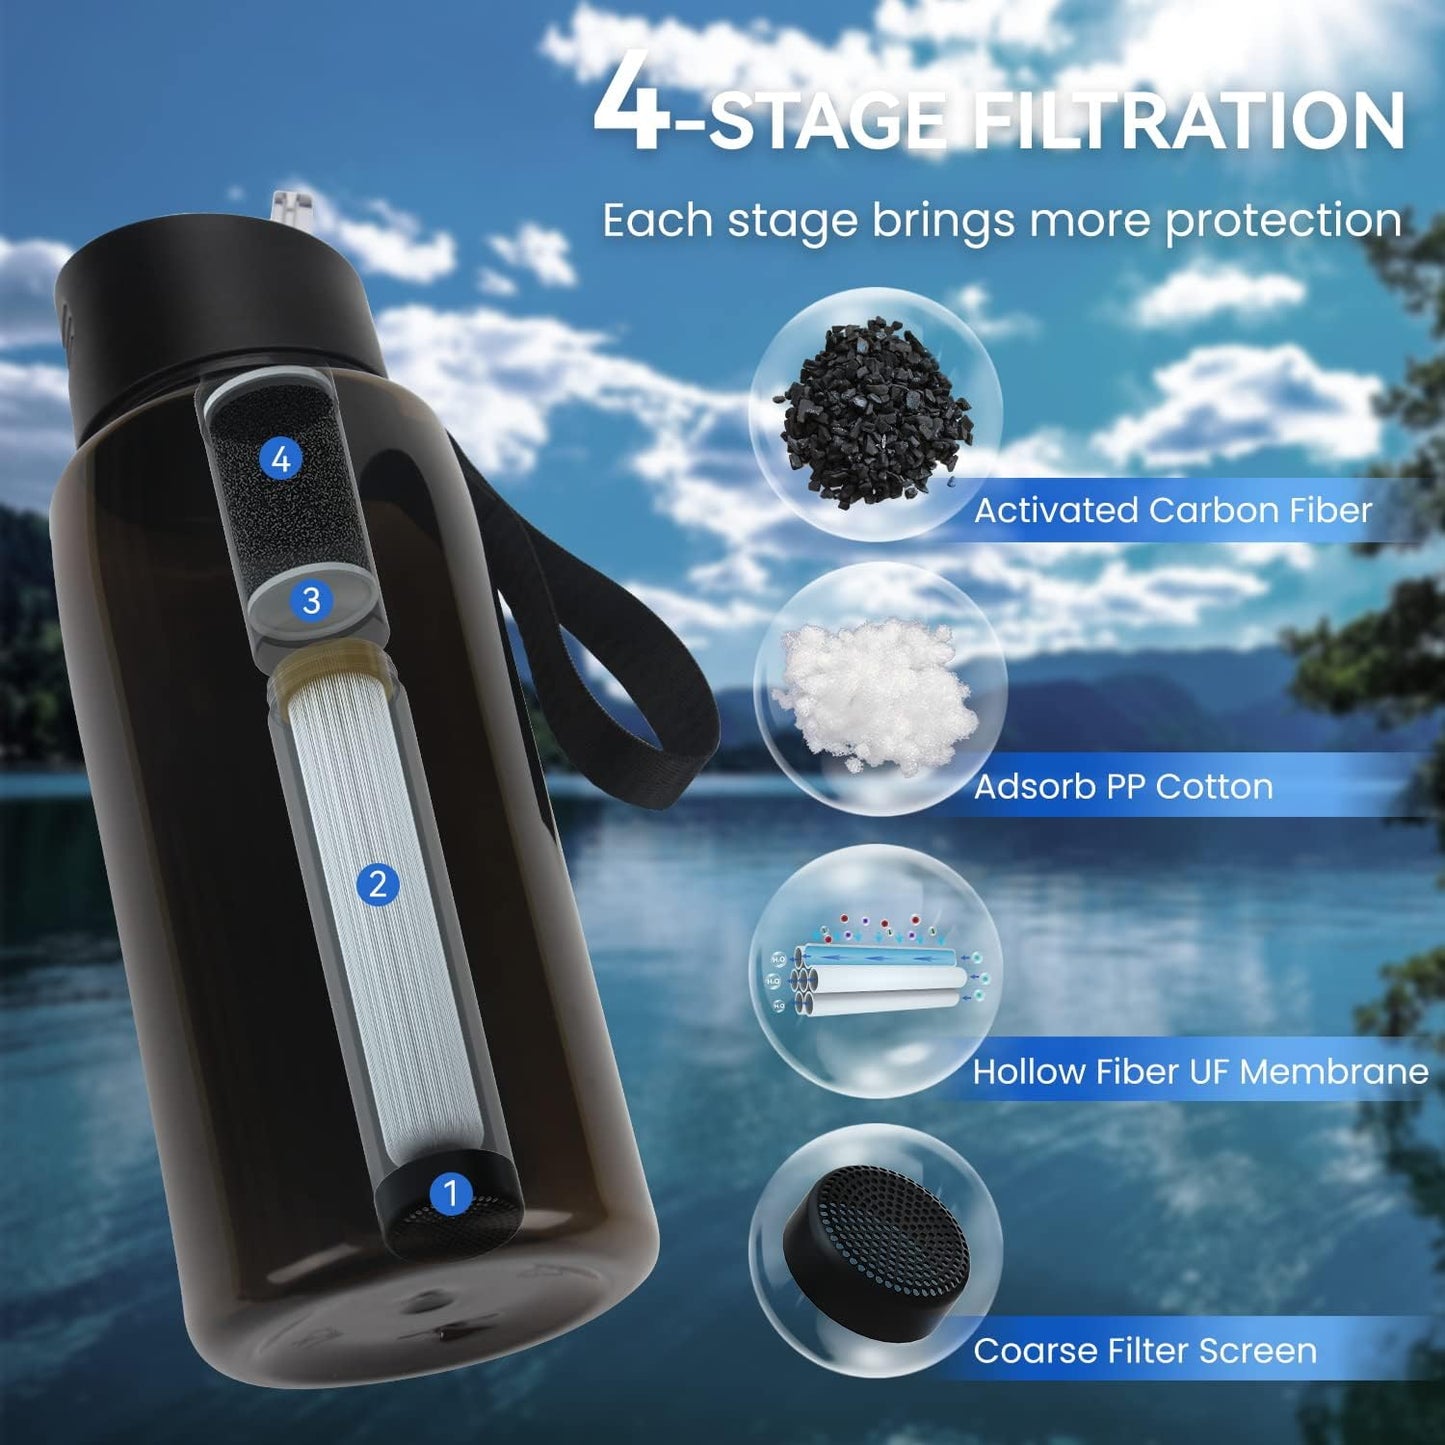 SurviMate Ultra-Filtration Filtered Water Bottle